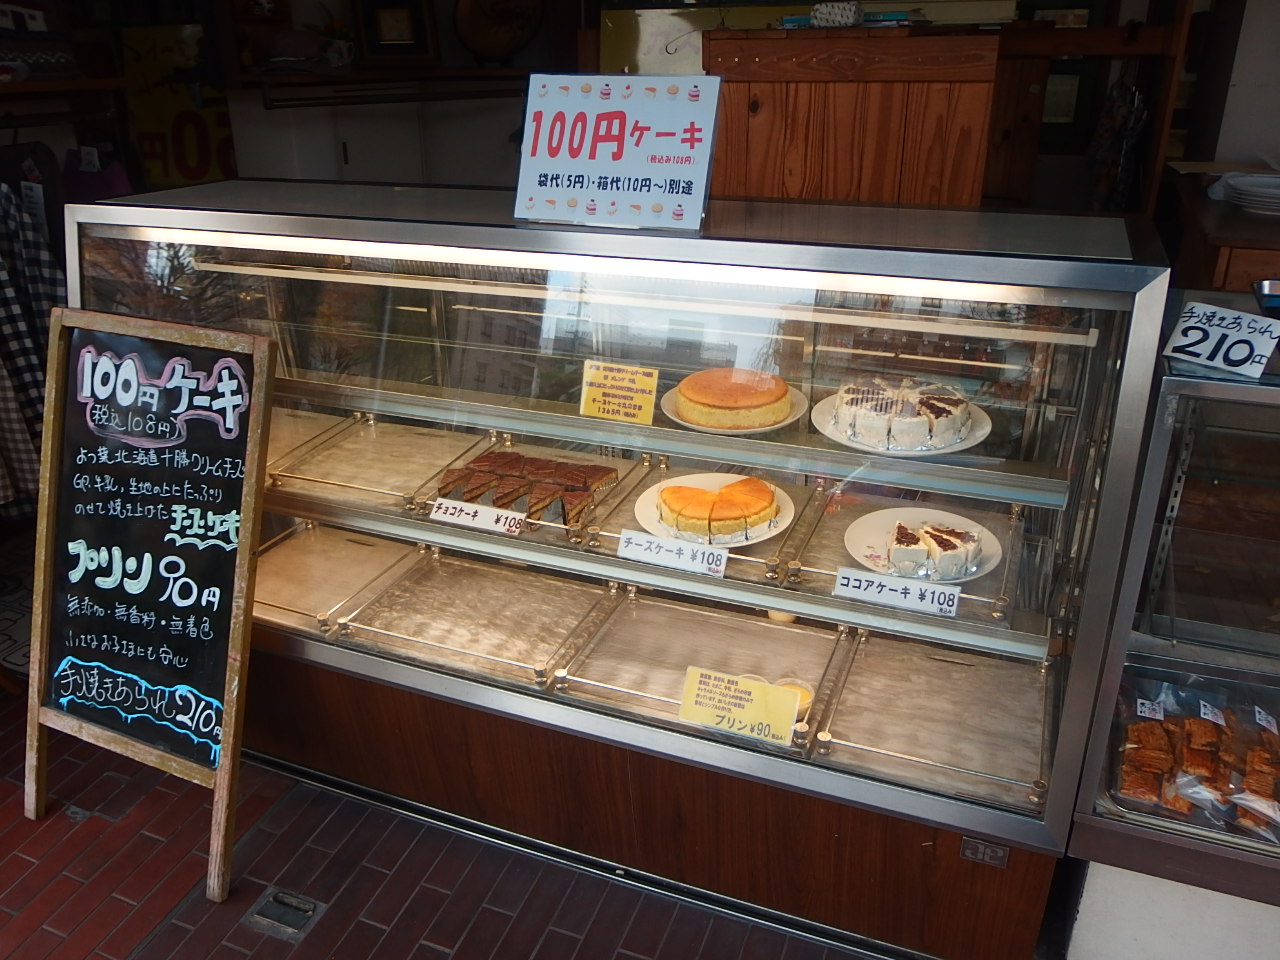 手作り100円ケーキの店 マルノウチ洋菓子店 京都市上京区長尾町 昔ながらの素朴な味わいのするケーキがほんま美味いねん そんな神戸で